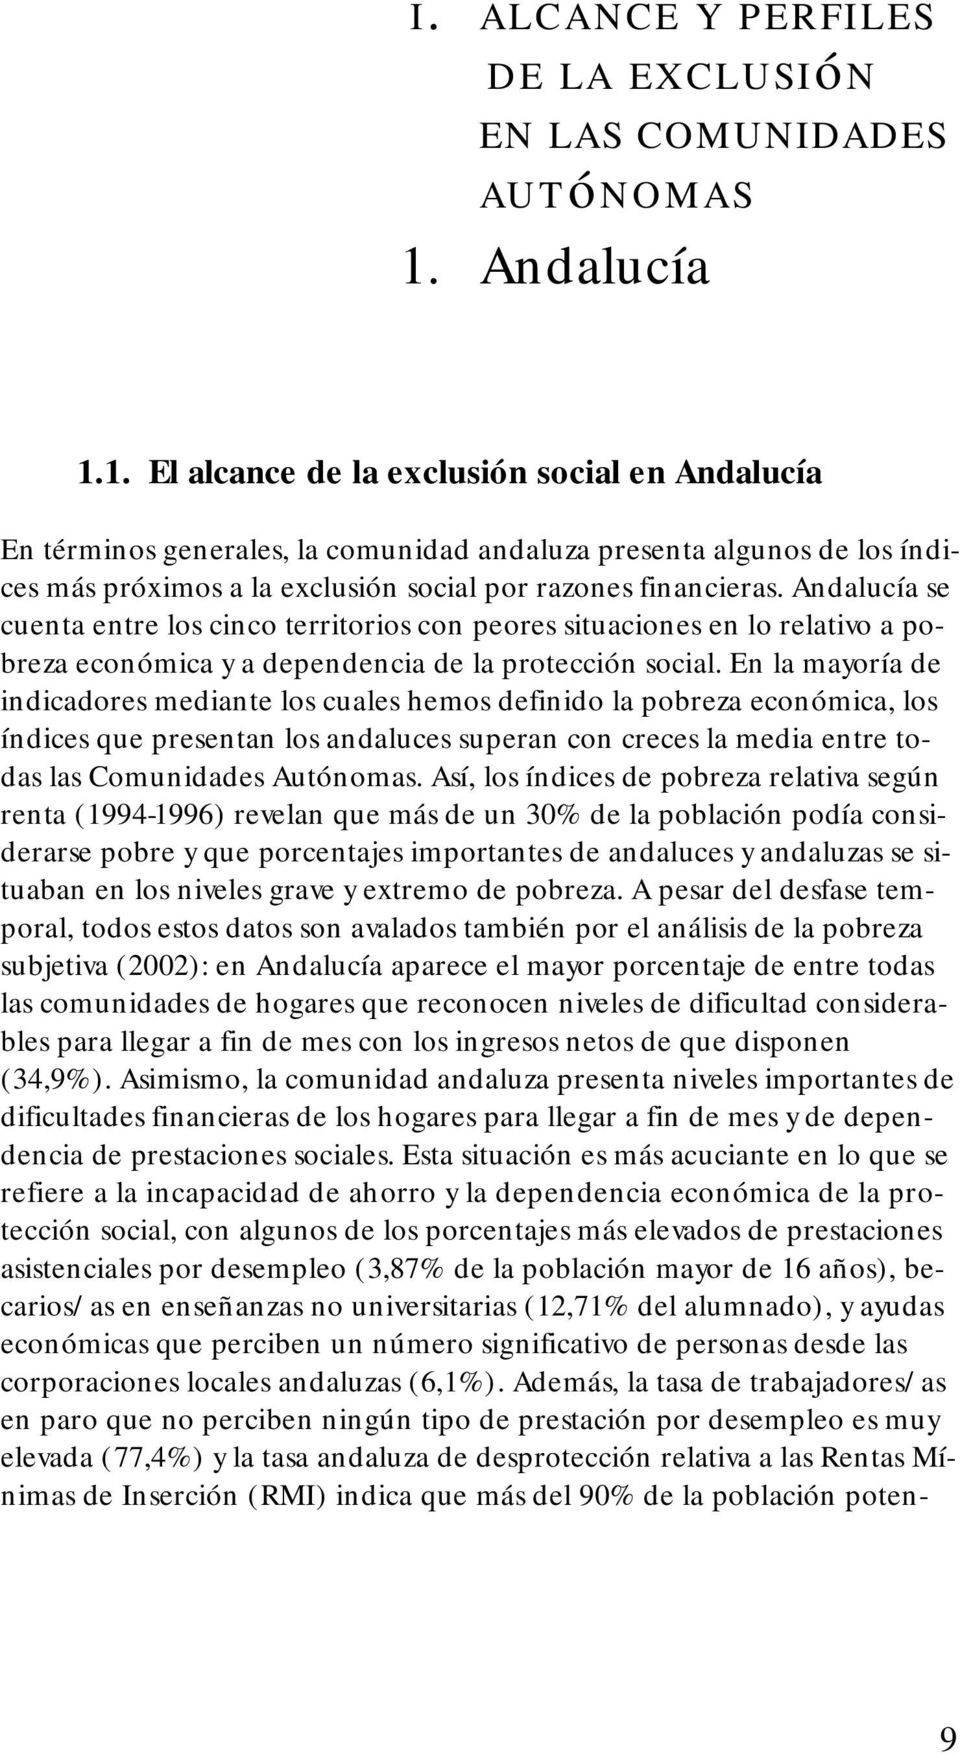 Andalucía se cuenta entre los cinco territorios con peores situaciones en lo relativo a pobreza económica y a dependencia de la protección social.